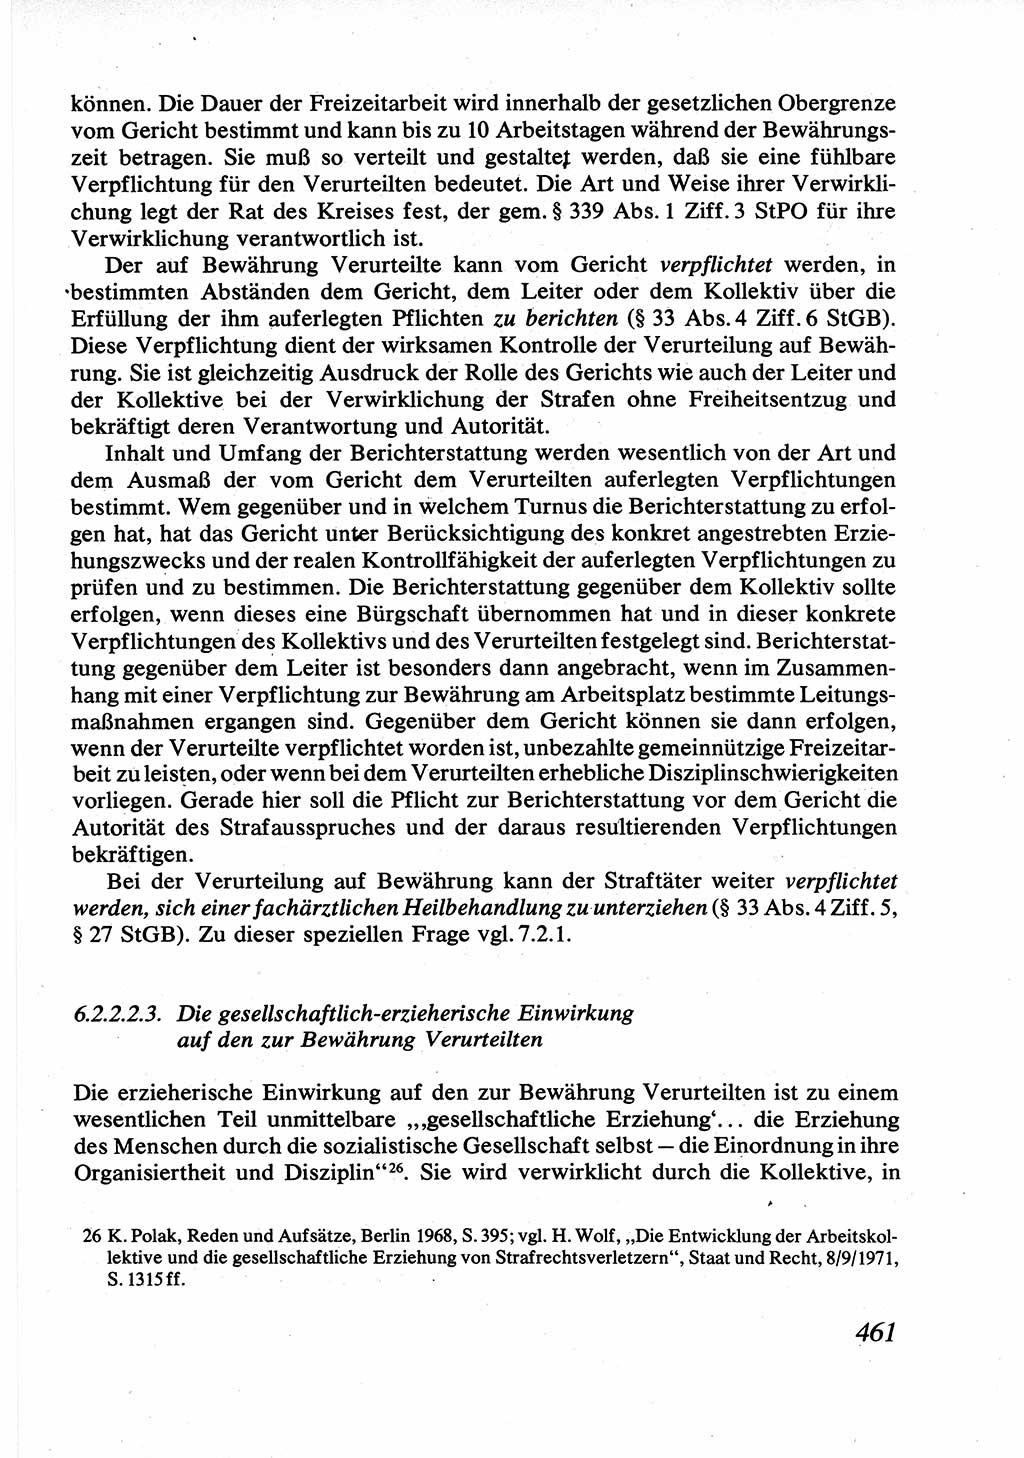 Strafrecht [Deutsche Demokratische Republik (DDR)], Allgemeiner Teil, Lehrbuch 1976, Seite 461 (Strafr. DDR AT Lb. 1976, S. 461)